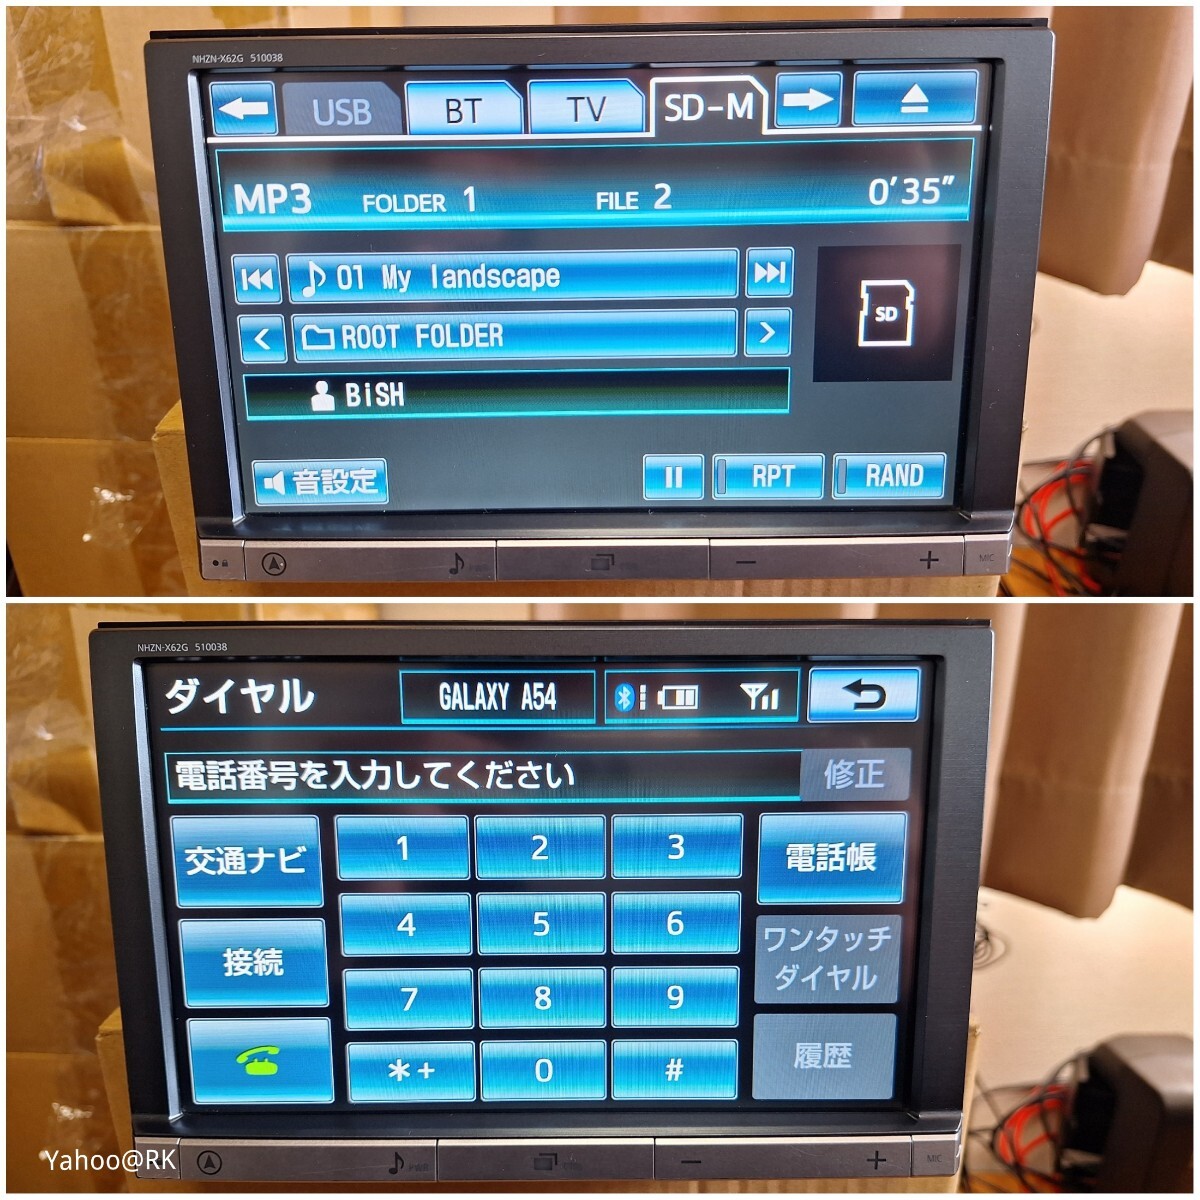 トヨタ純正 8インチ HDDナビ 型式 NHZN-X62G DVD再生 テレビ フルセグ SDカード USB CD録音 Bluetooth 品番 08545-00V21 Panasonic_画像3